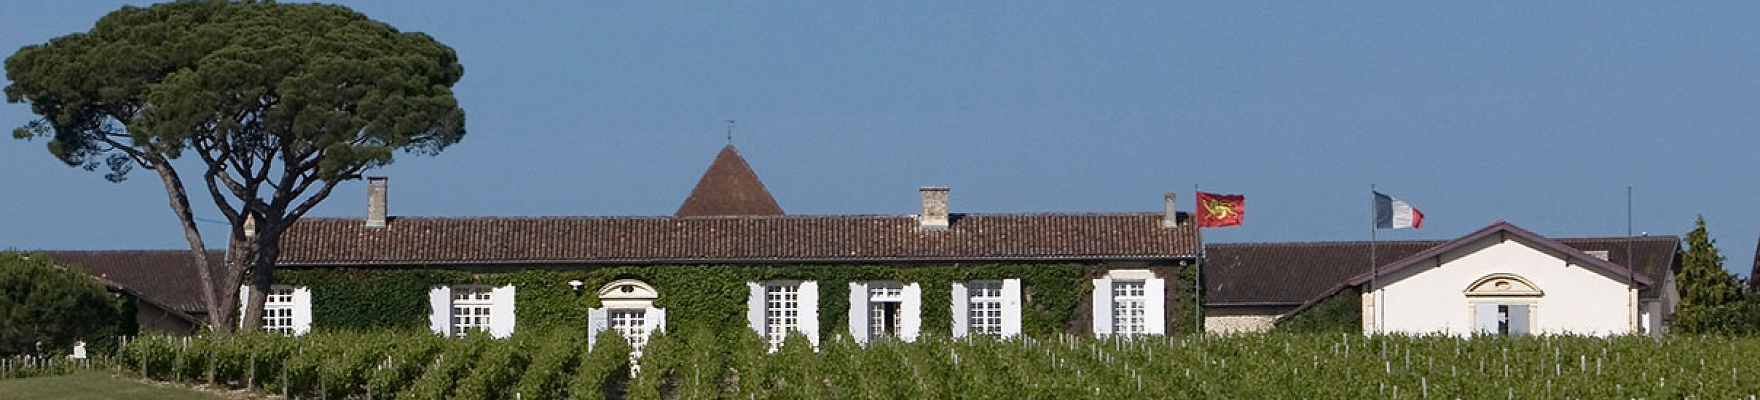 Château Meyney